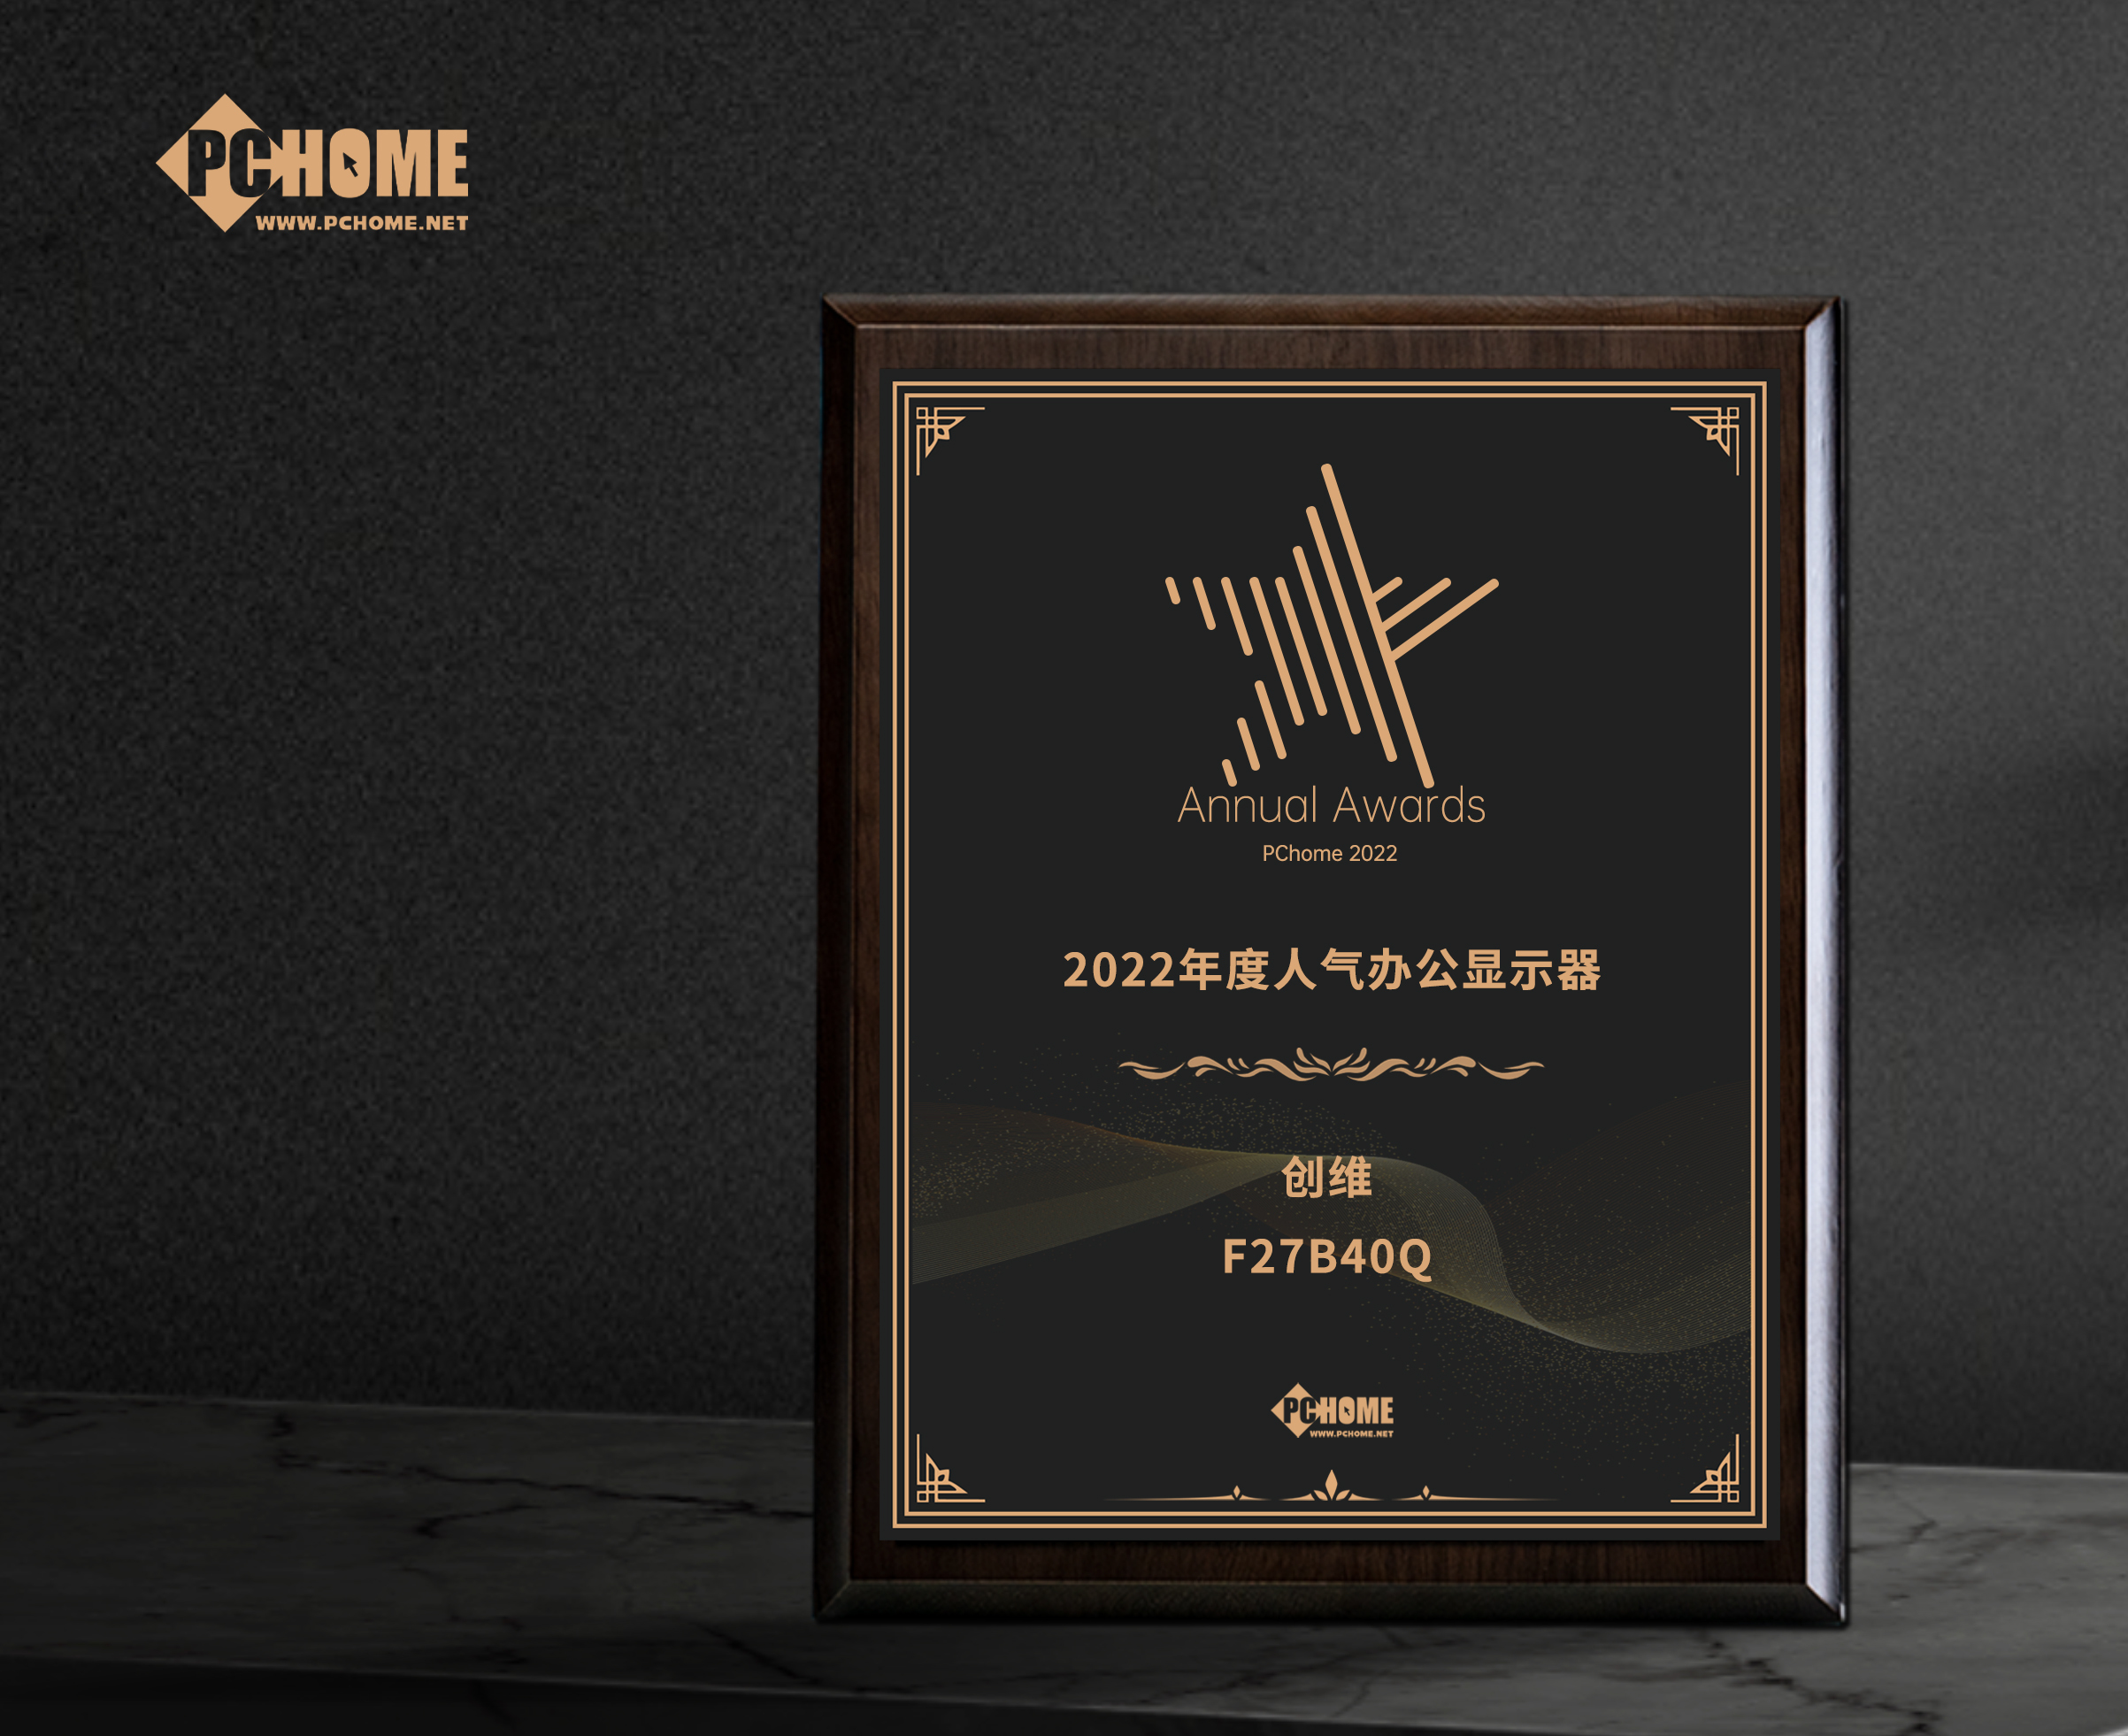 敦化市創維F27B40Q獲得PChome2022年度人氣辦公顯示器獎項